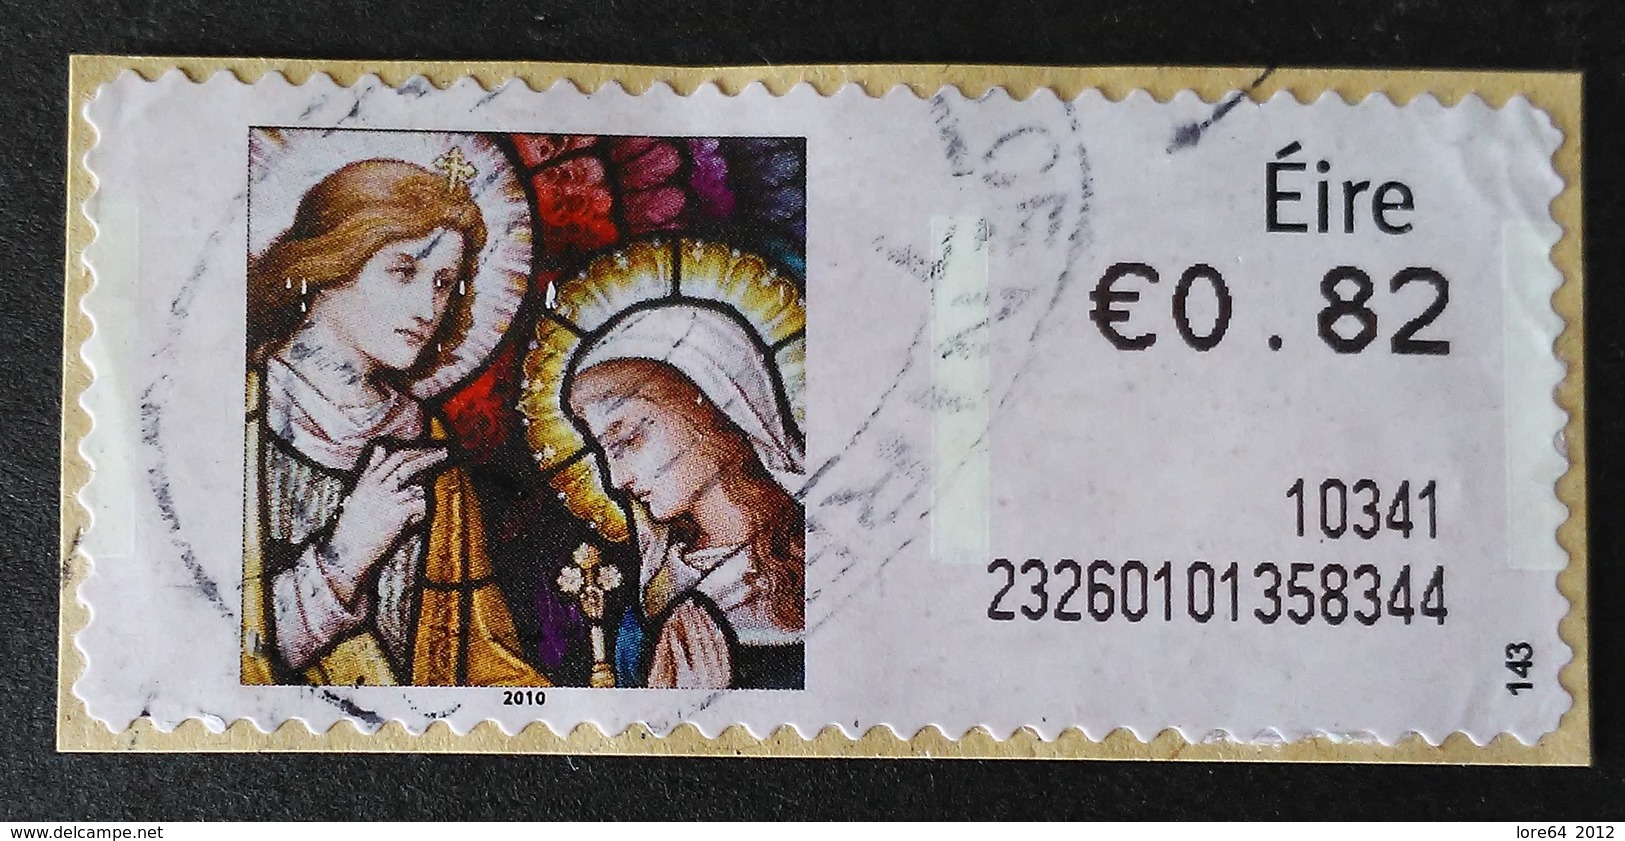 IRLANDA ATM 2010 - Vignettes D'affranchissement (Frama)